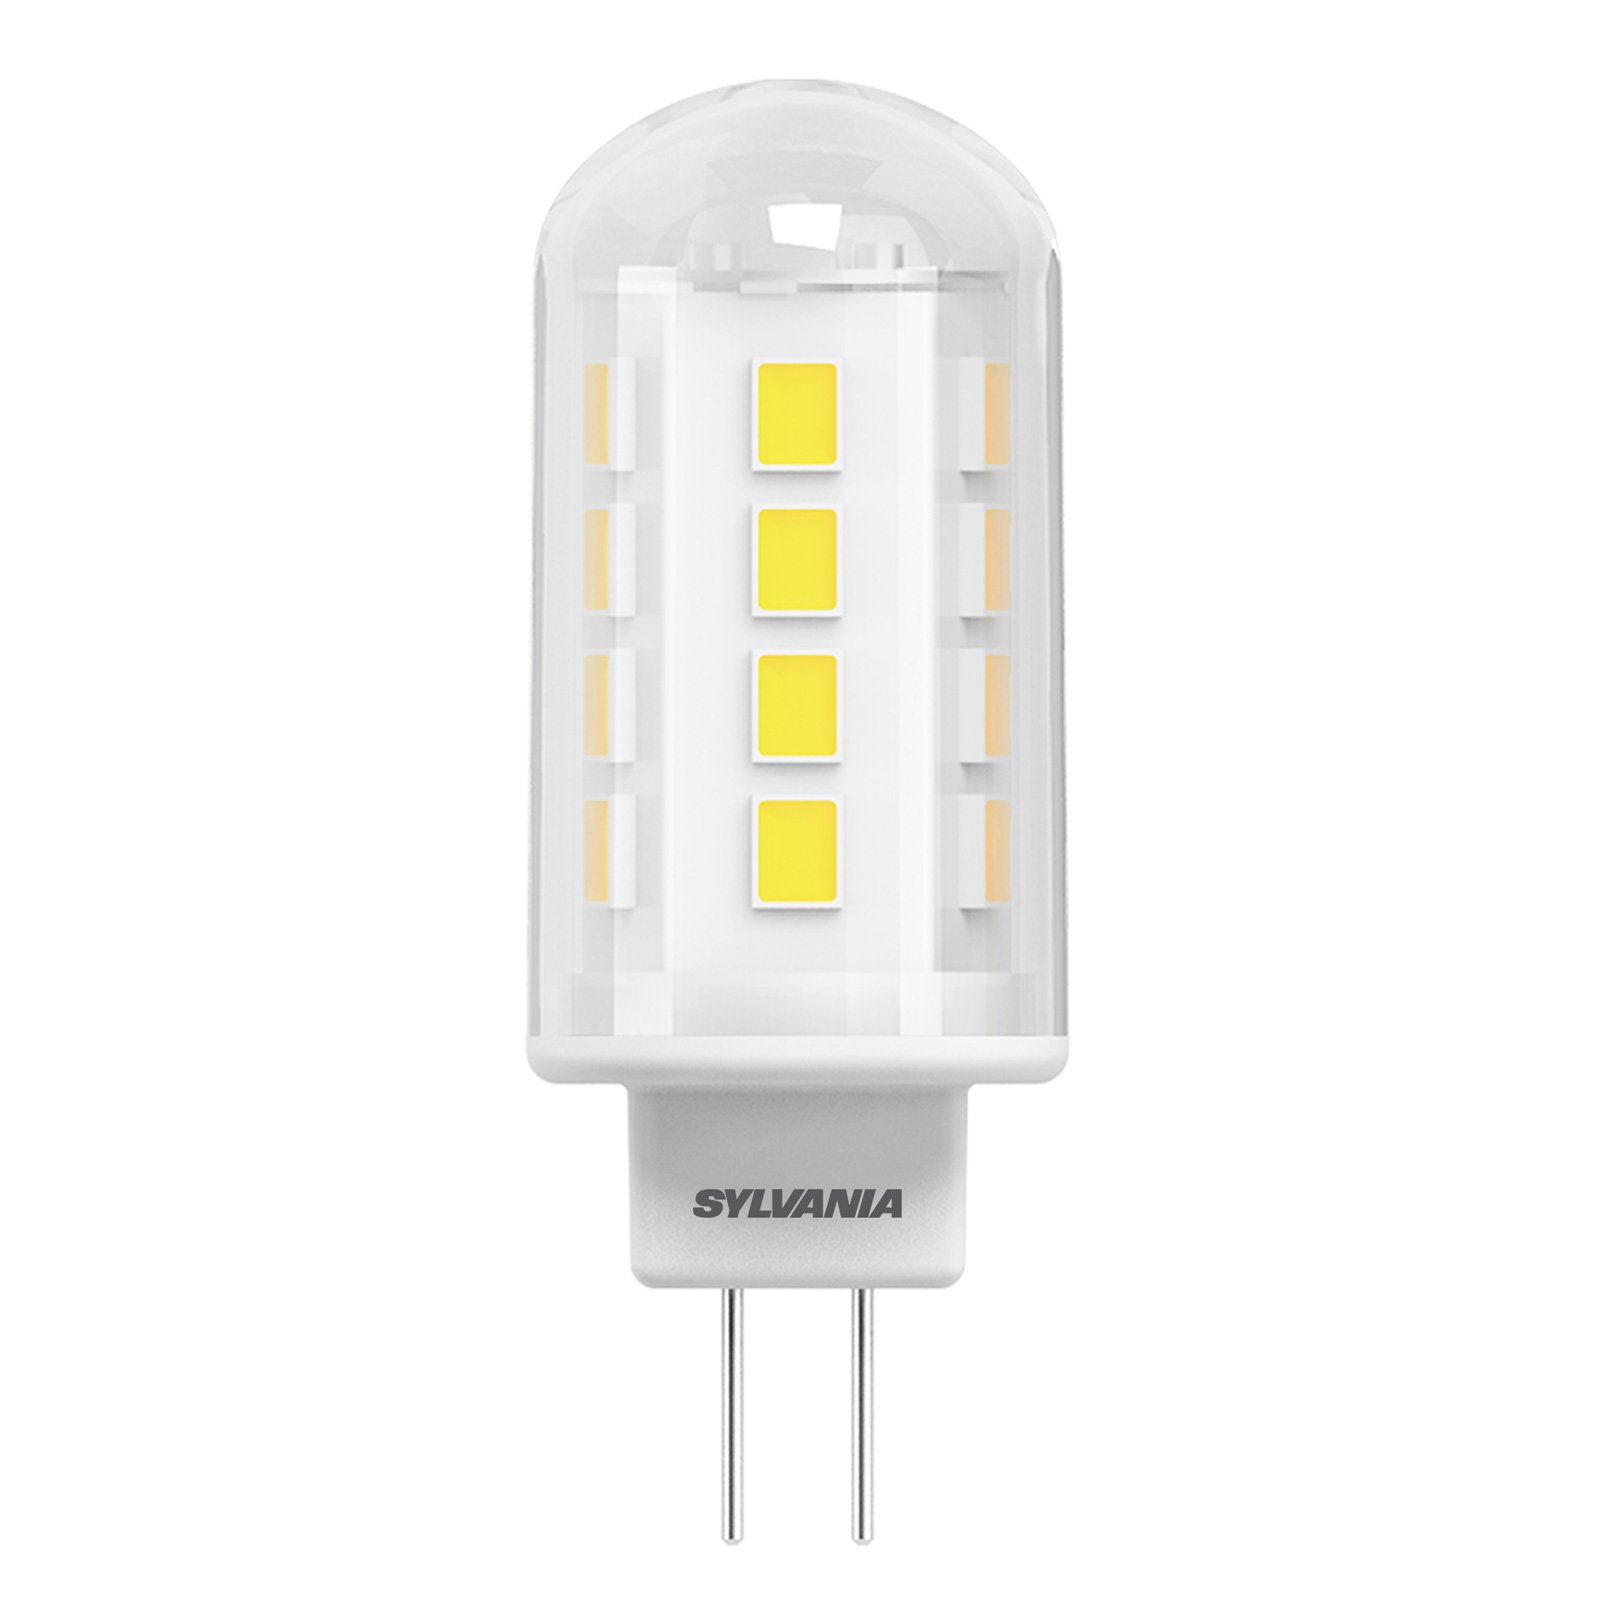 ToLEDo G4 1.9W clear warm white bi-pin LED bulb